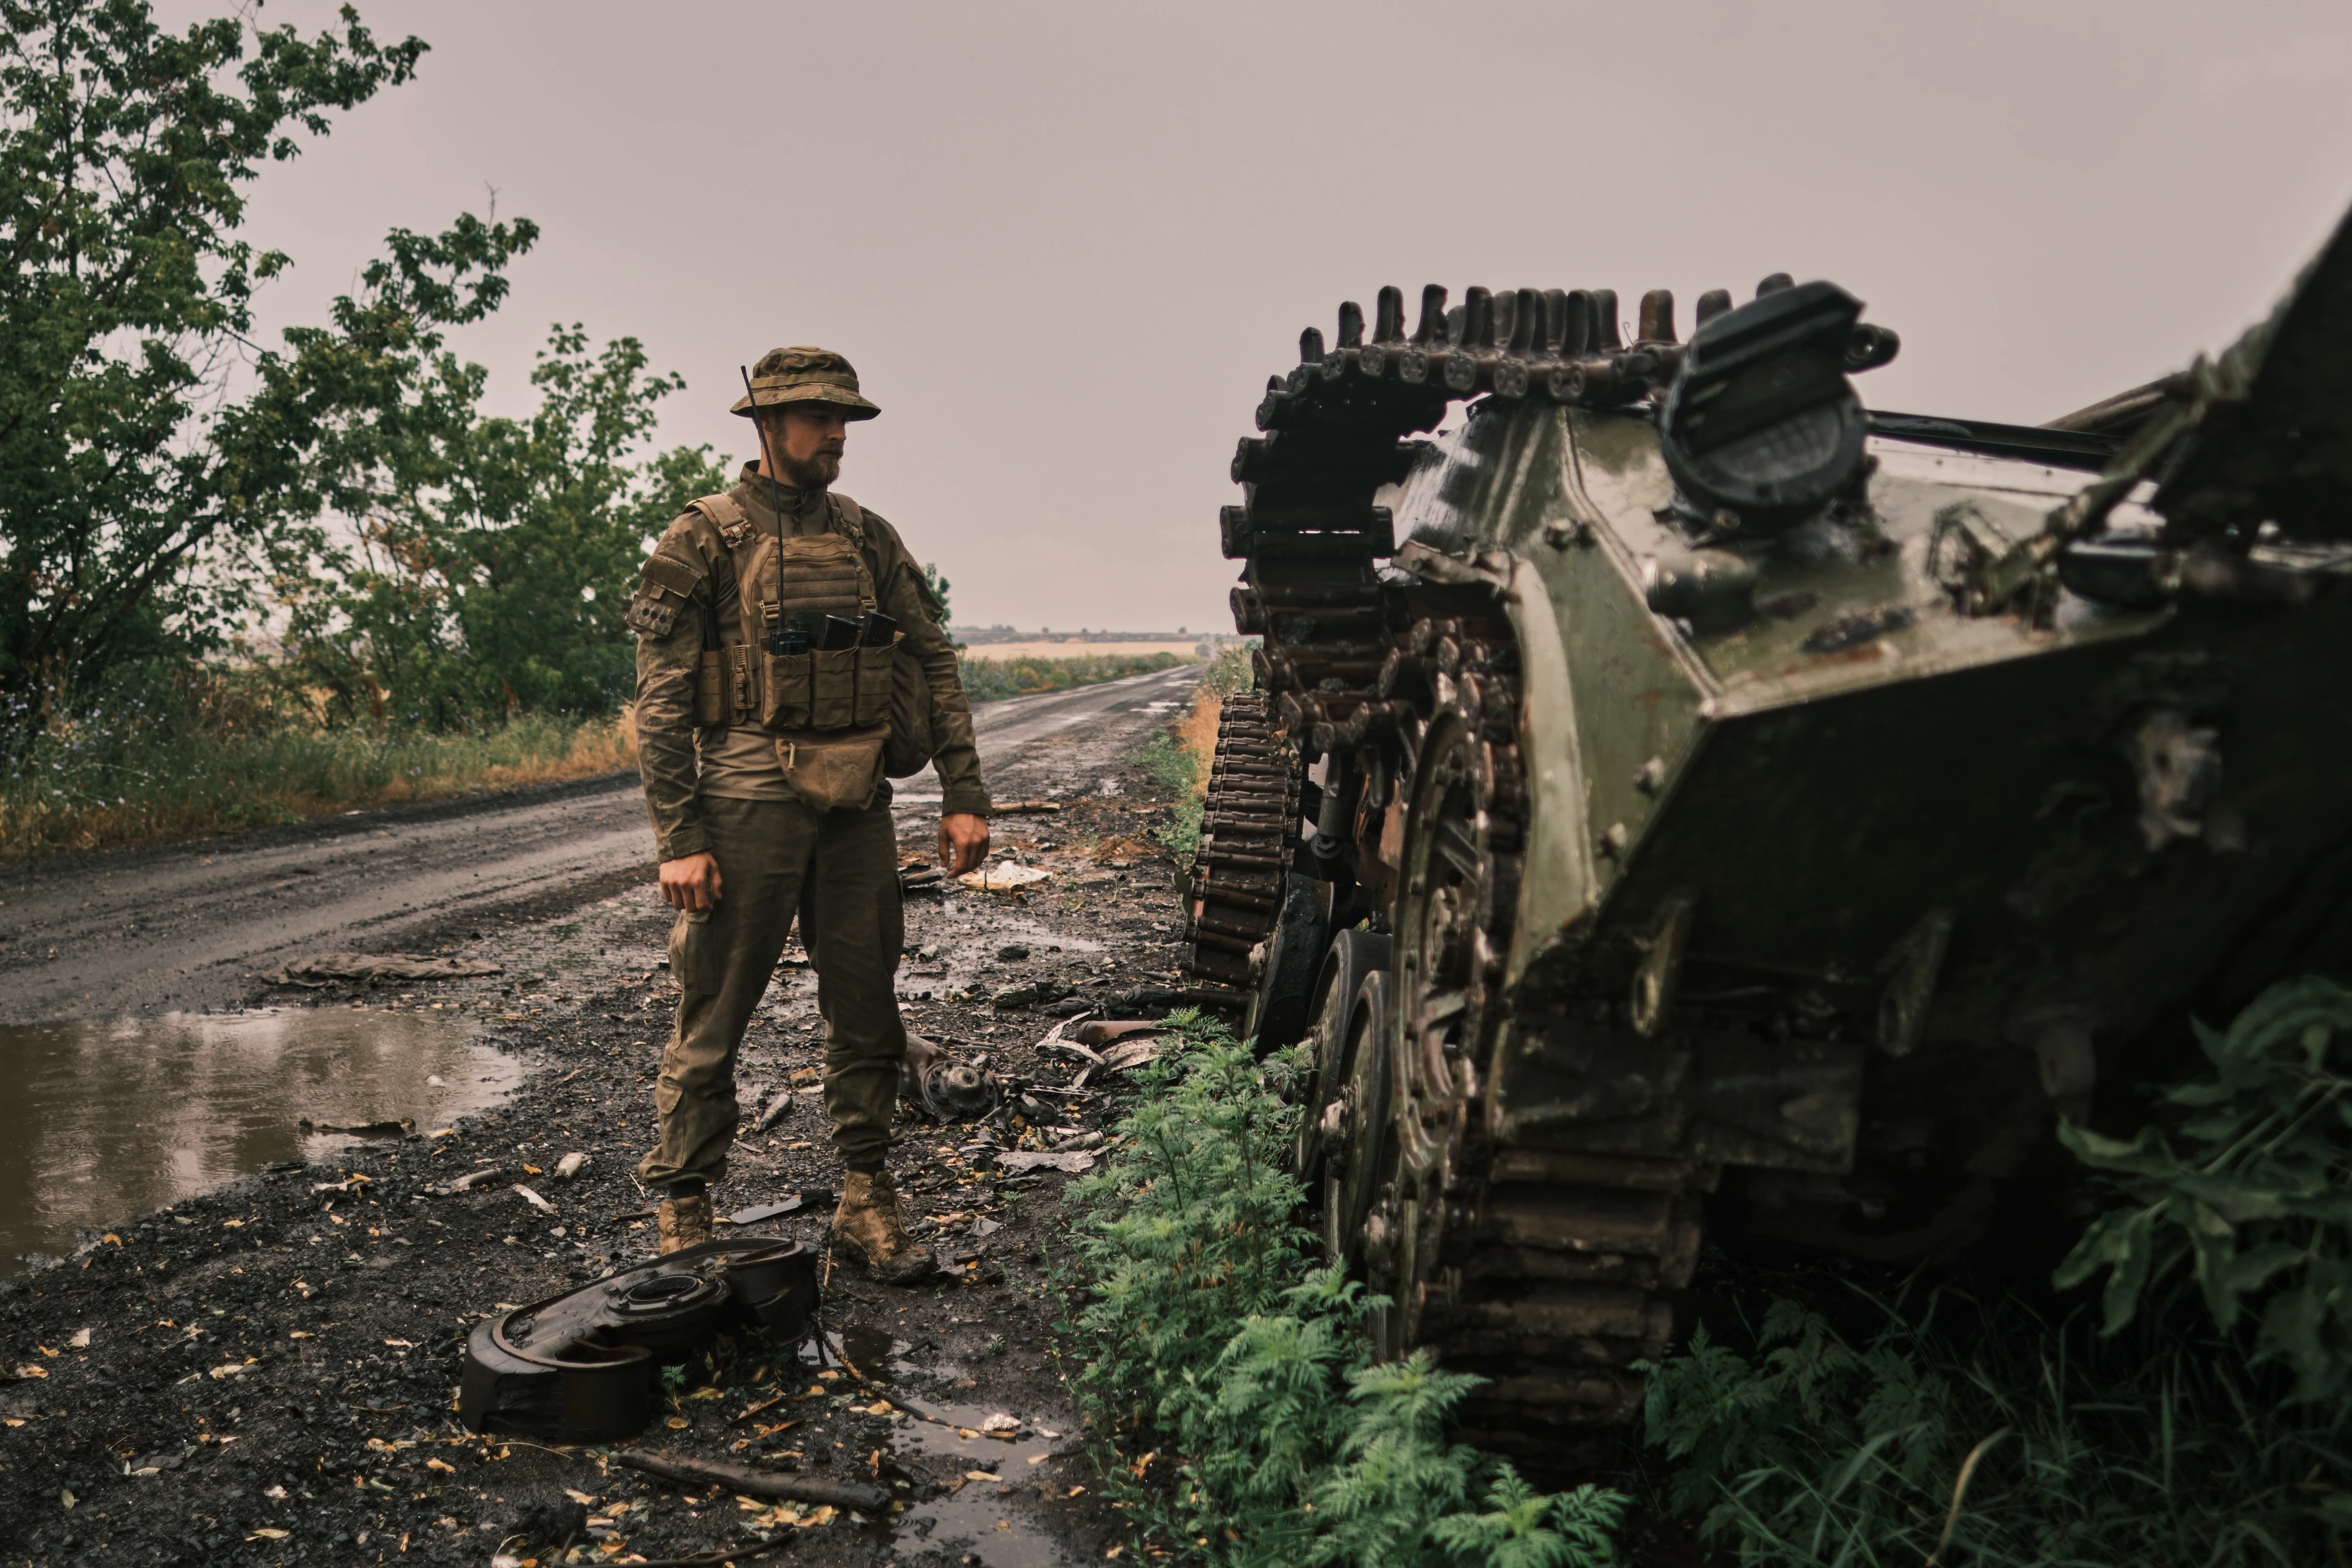 Soldat ucrainean lângă un tanc rusesc distrus. Foto: Shutterstock